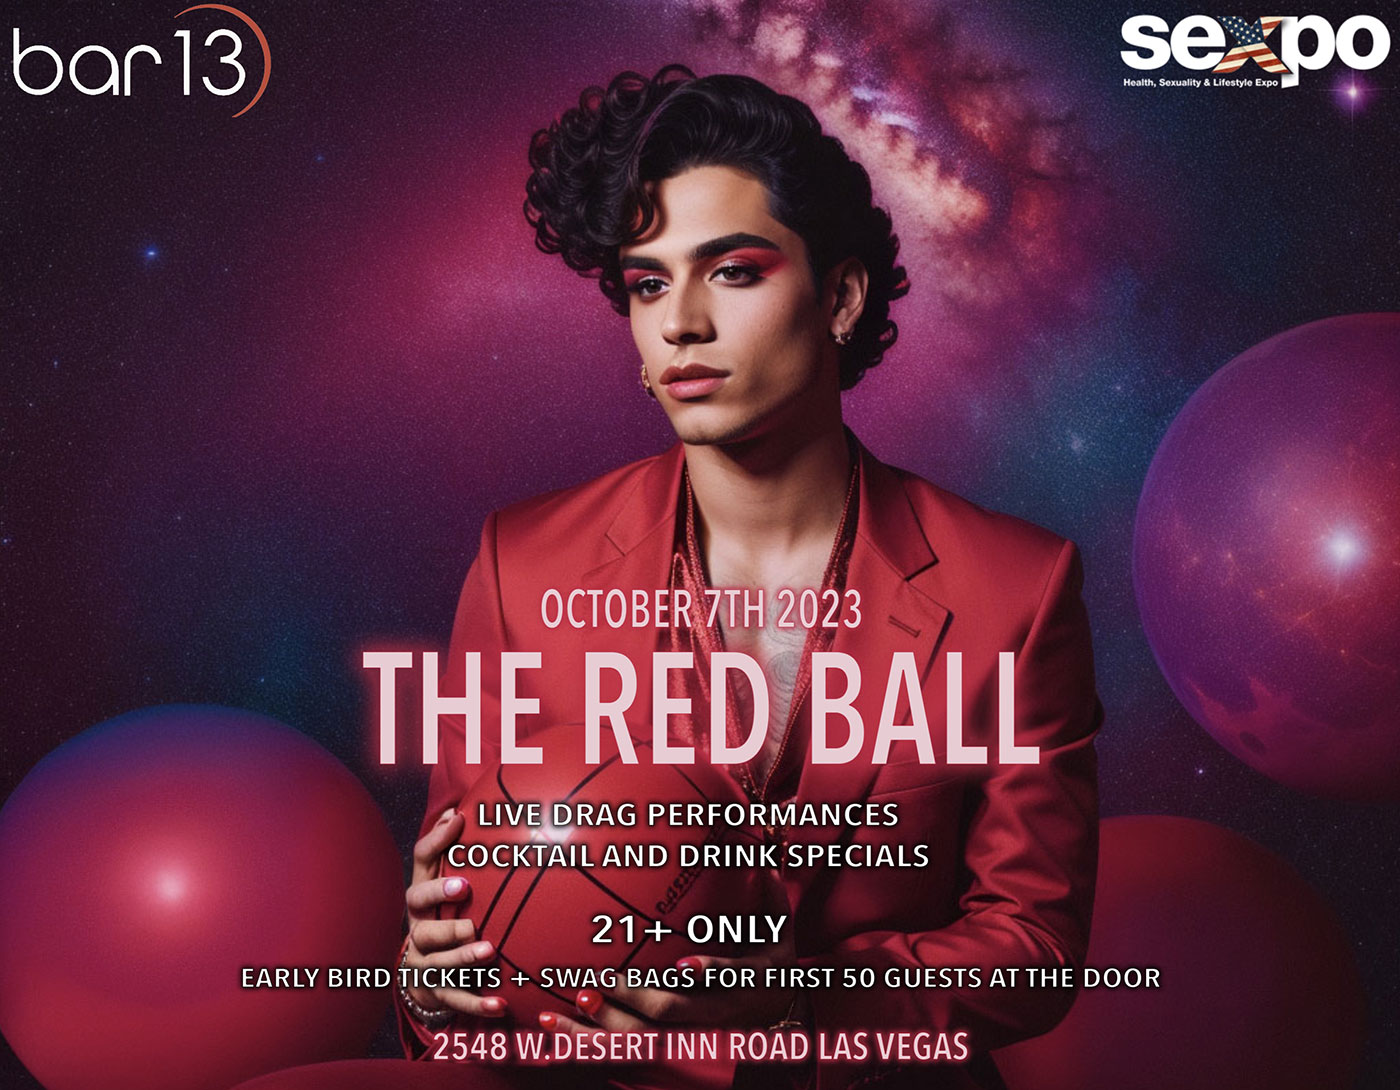 The Red Ball. Las Vegas. October 7th 2023. Bar 13. 2548 W.Desert Inn Road, Las Vegas.